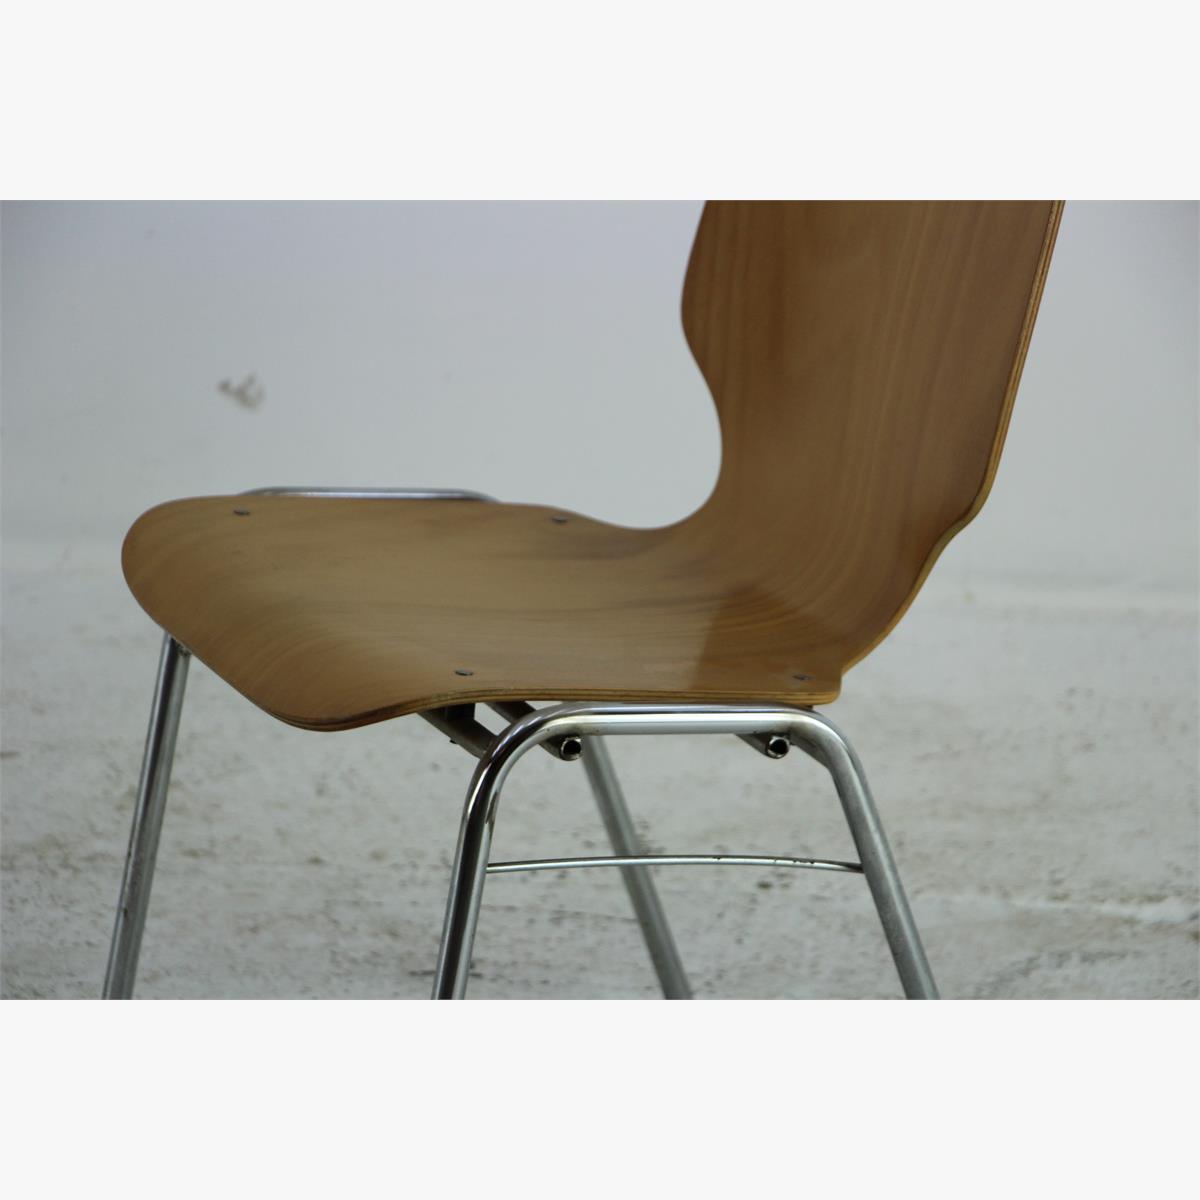 Afbeeldingen van retro stoel beuken zitting. Chrome poten 50 stuks beschikbaar